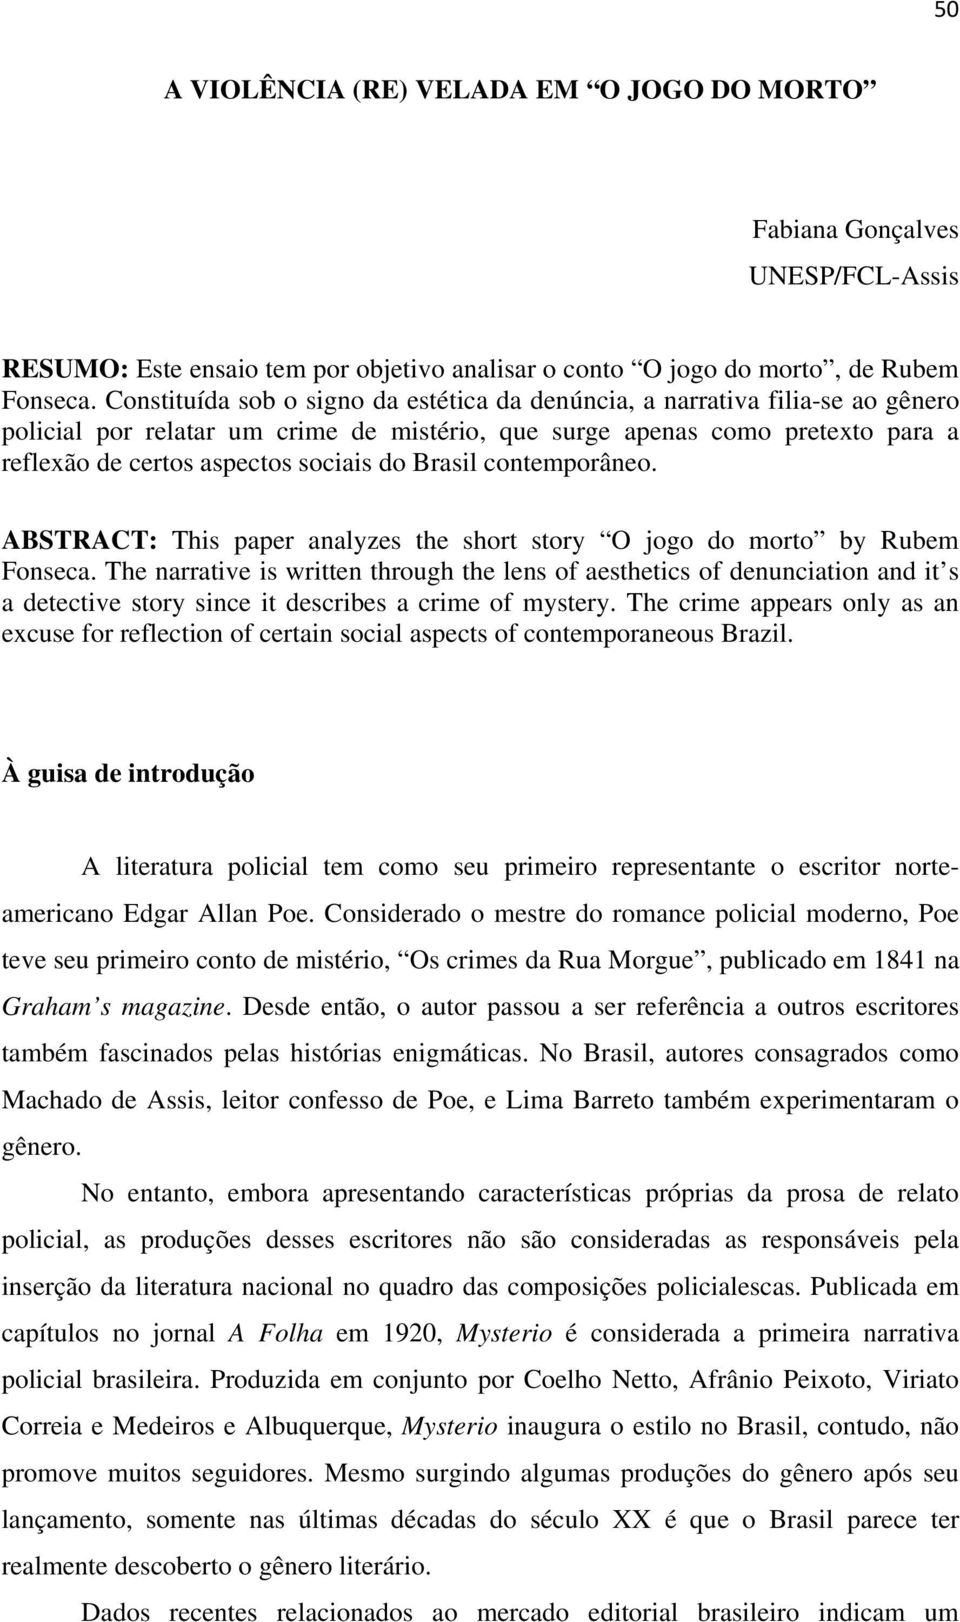 Brasil contemporâneo. ABSTRACT: This paper analyzes the short story O jogo do morto by Rubem Fonseca.